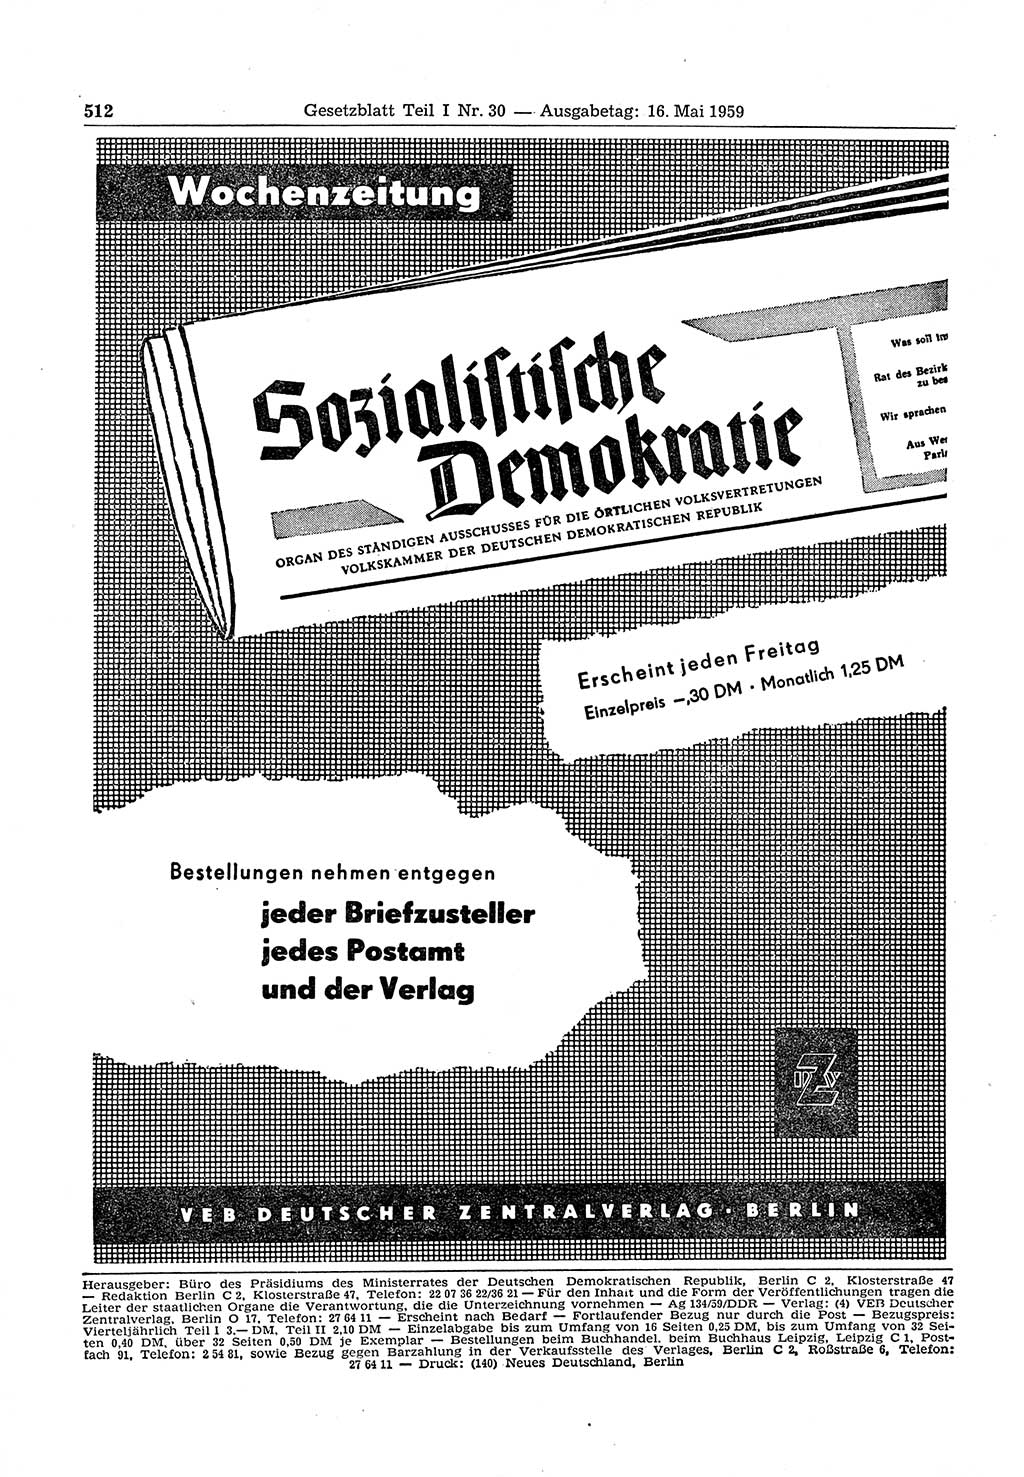 Gesetzblatt (GBl.) der Deutschen Demokratischen Republik (DDR) Teil Ⅰ 1959, Seite 512 (GBl. DDR Ⅰ 1959, S. 512)